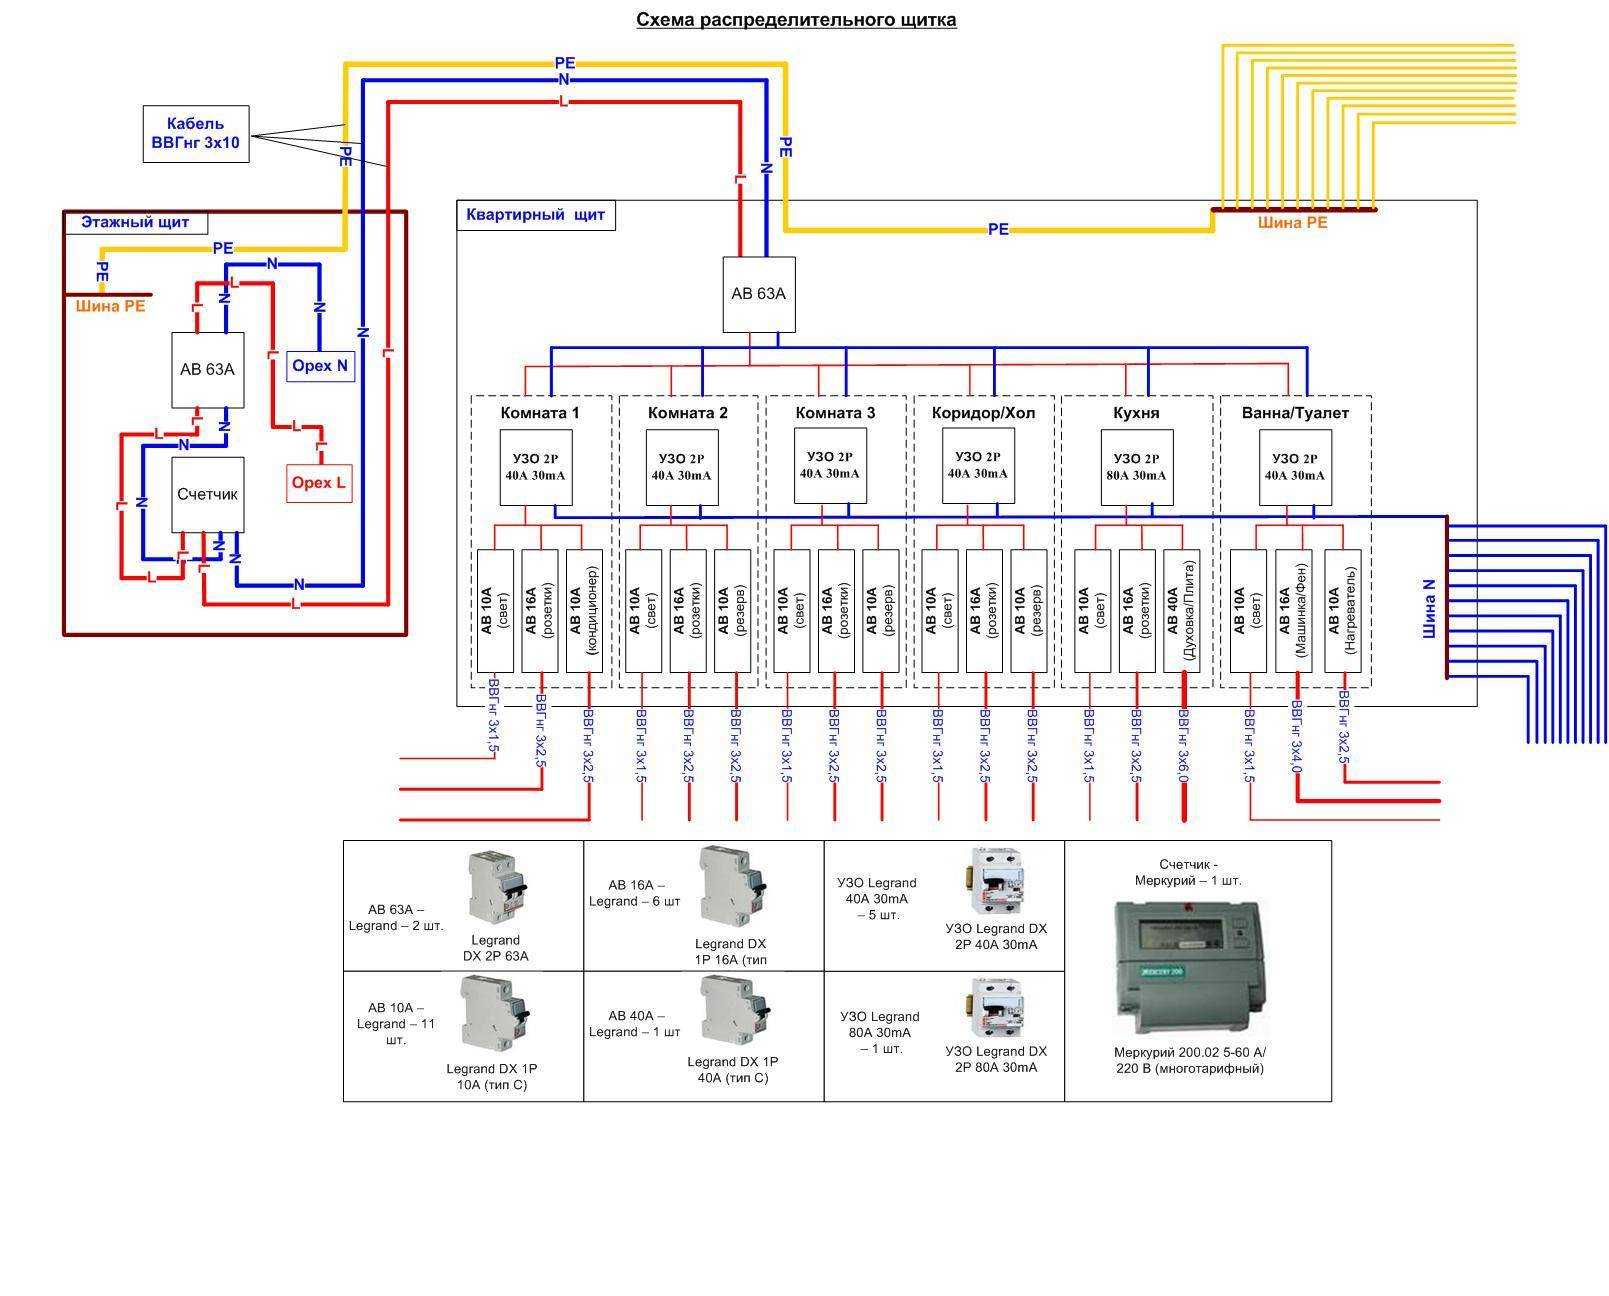 Как расключить электрический щит Распределение потребителей Составление схемы электрощита Установка комплектующих элементов Подключение кабелей и проводов внутри щитка